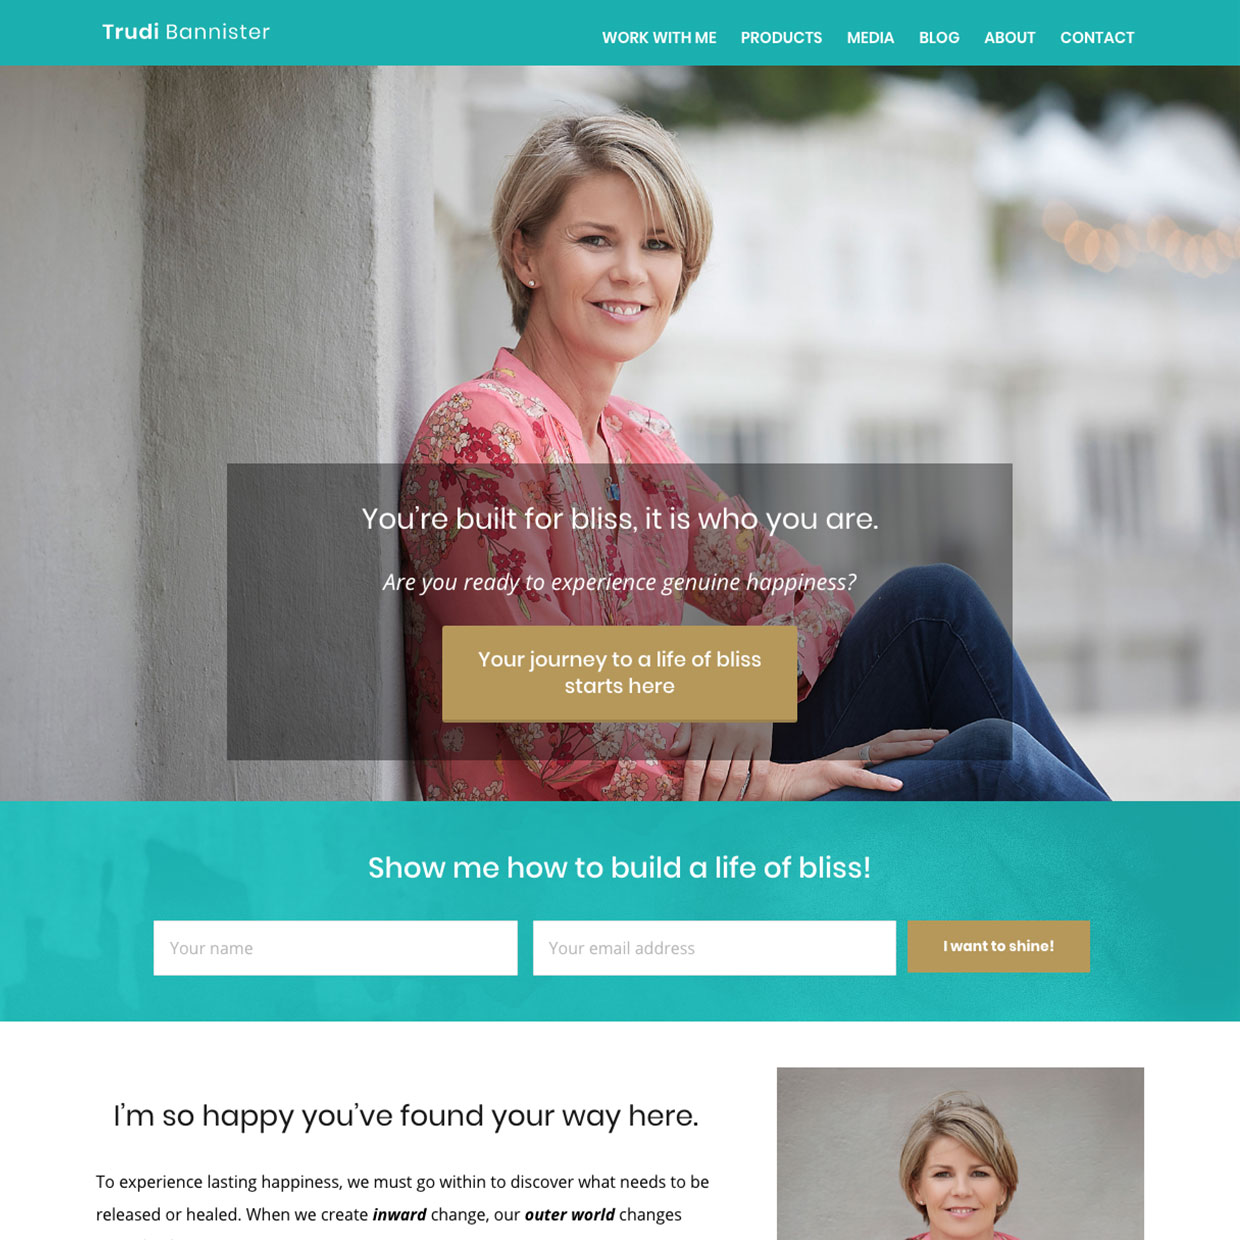 Trudi Bannister website design by Frances Verbeek